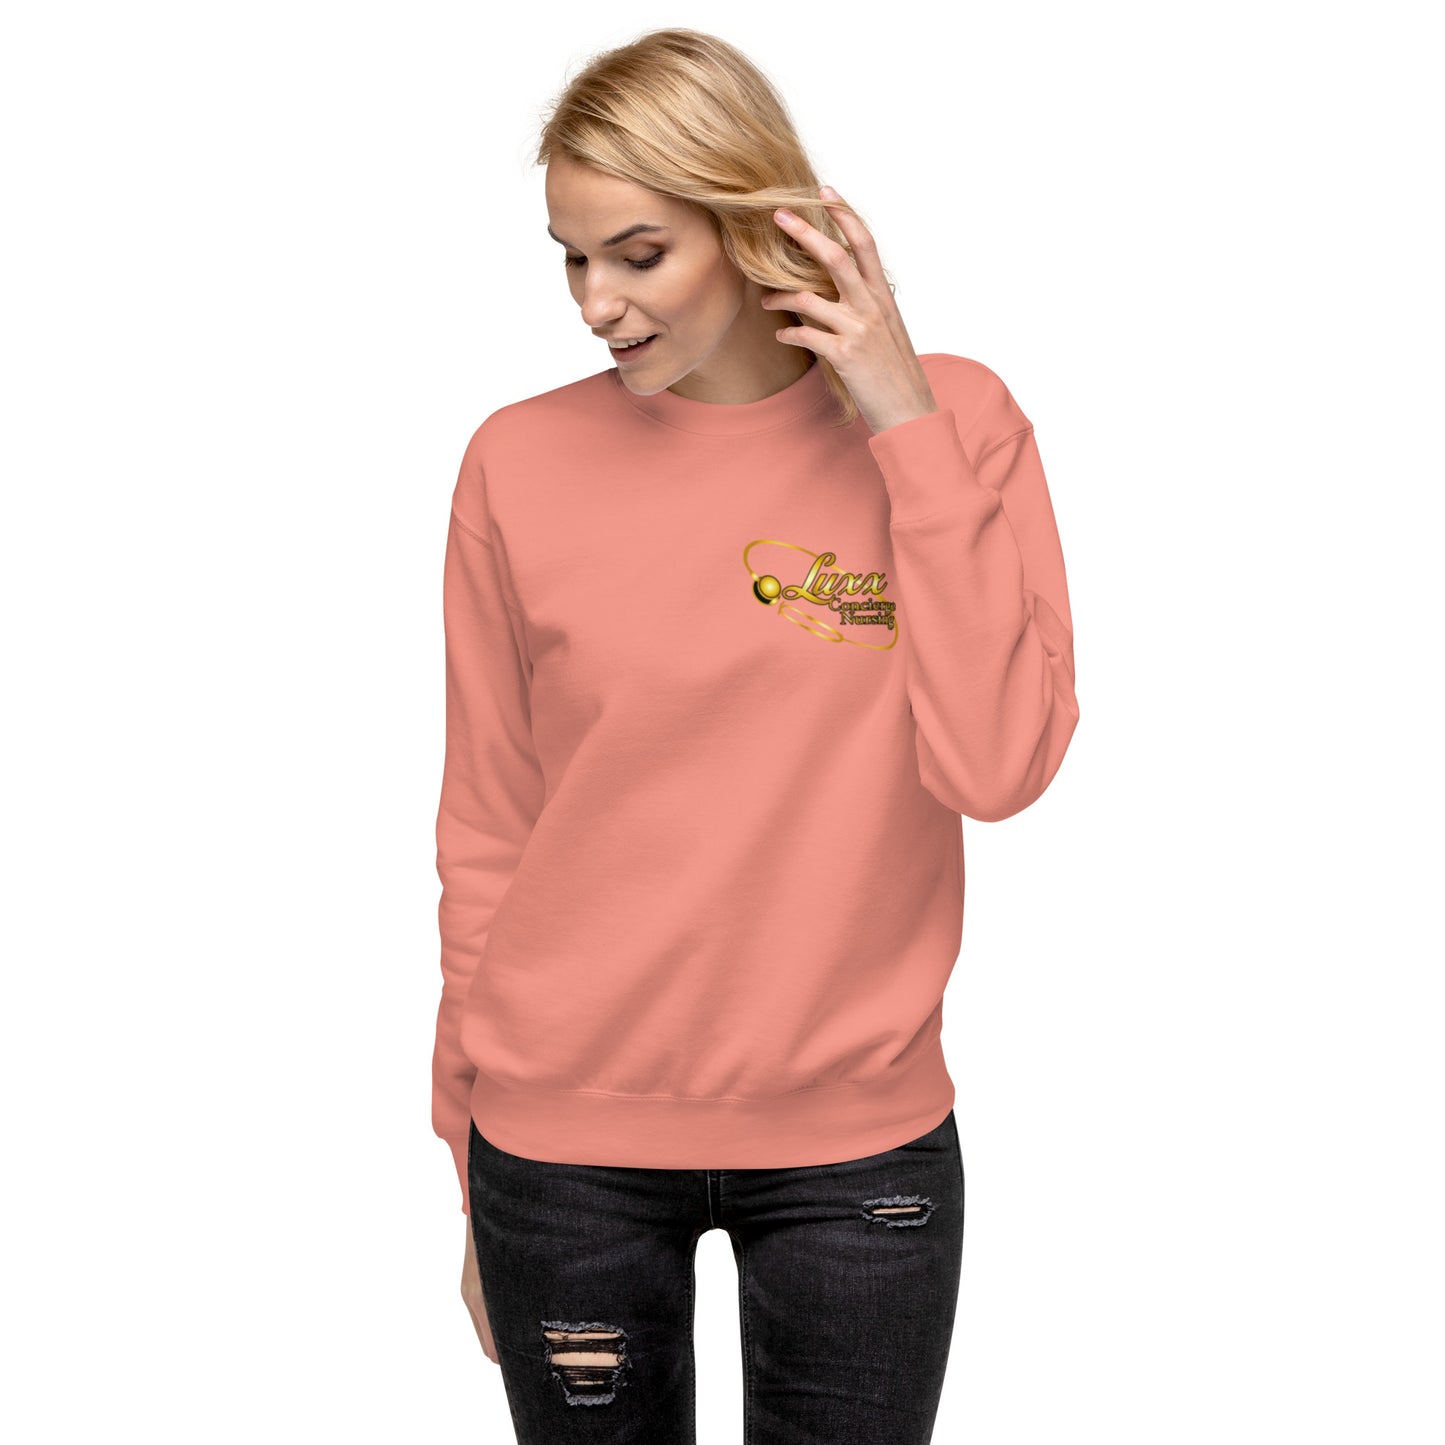 Luxx Collection Sweatshirt